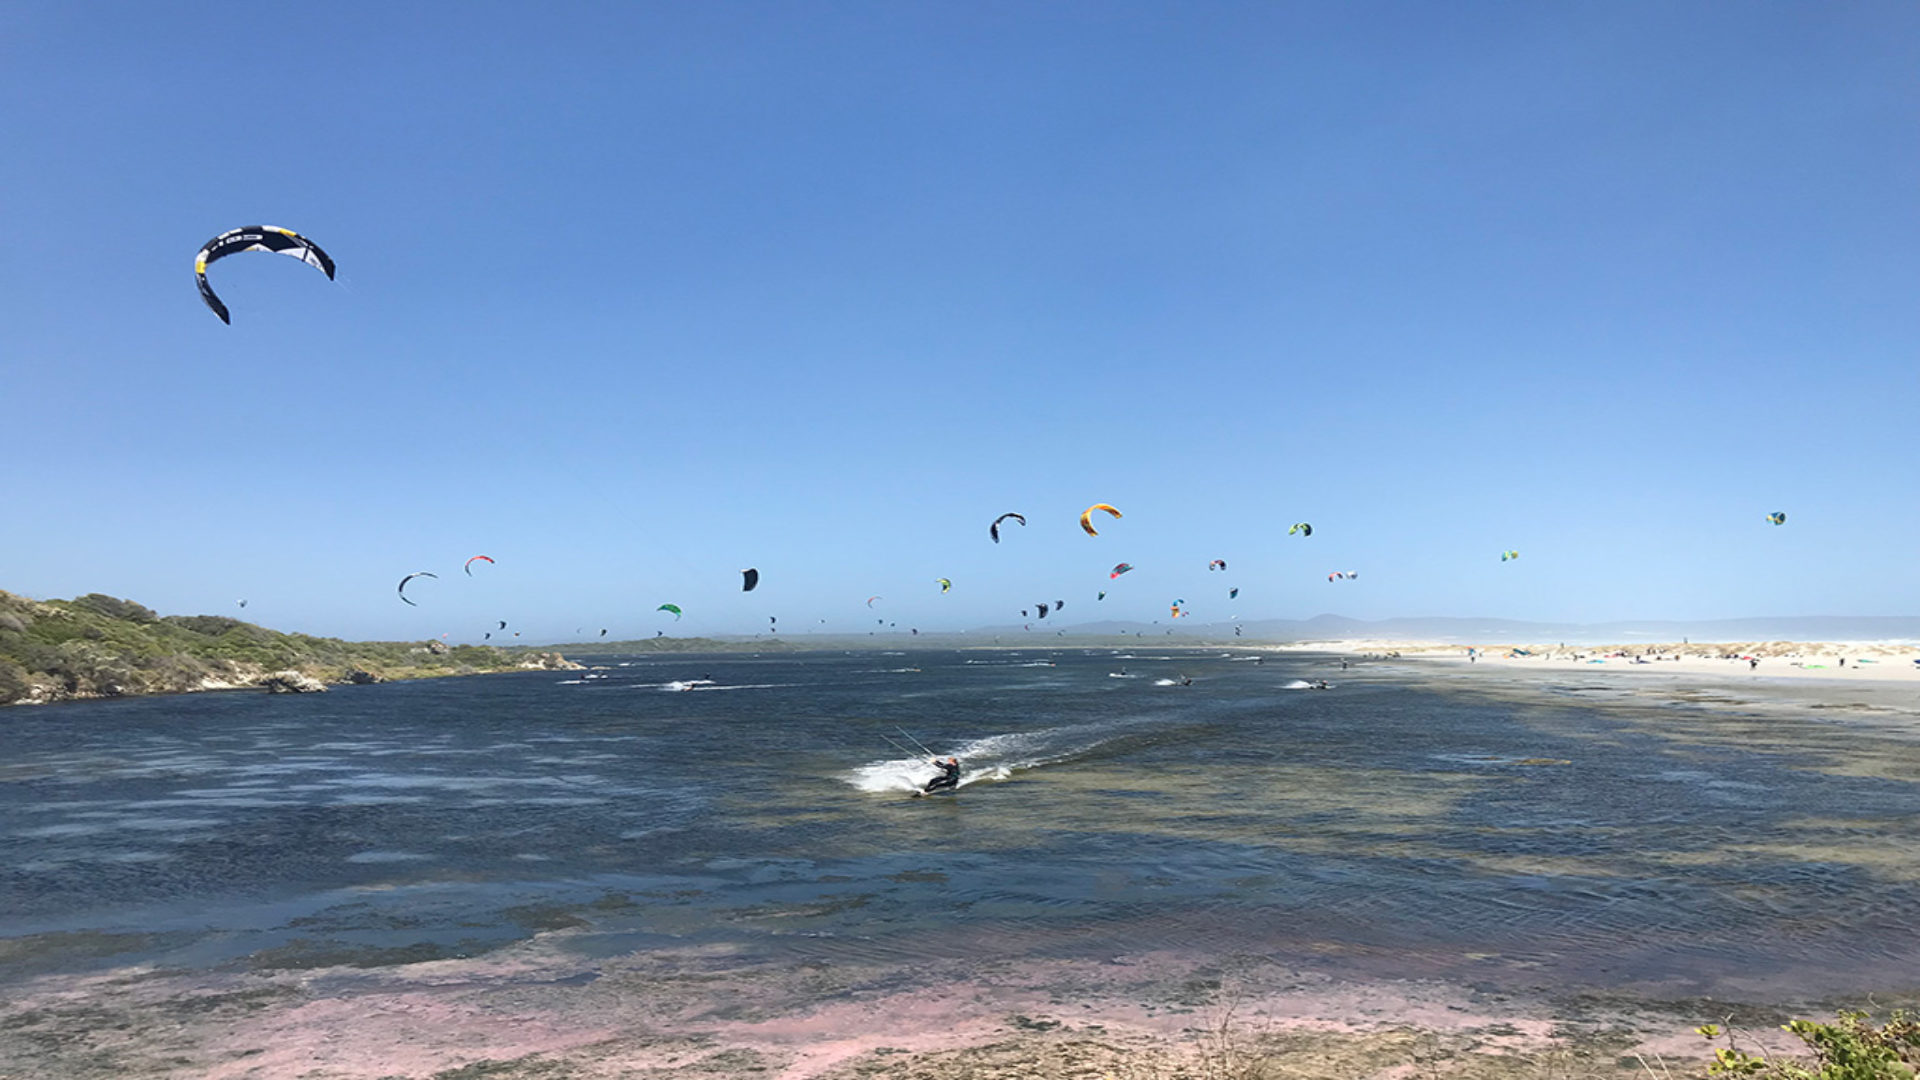 kite-surf-hermanus-lagoon-surfers